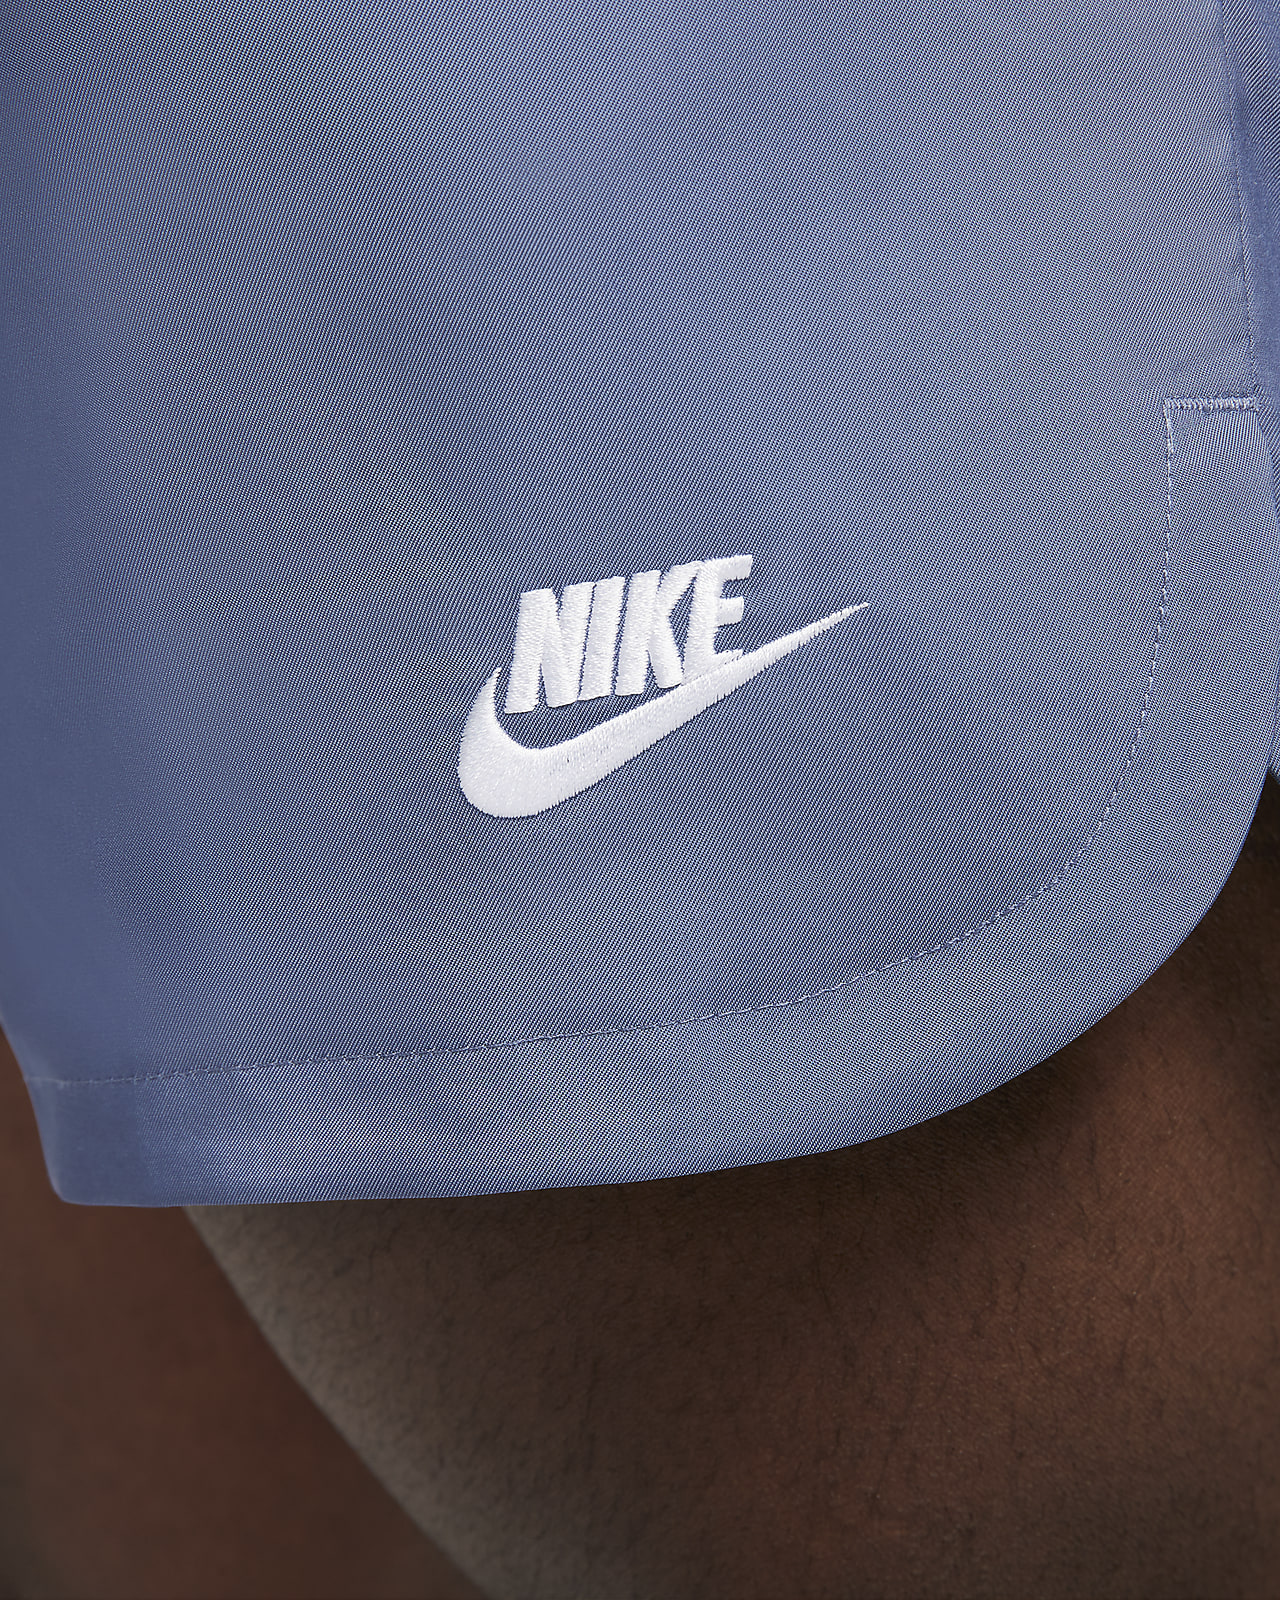 Short Nike Sportswear Woven Flow - Masculino